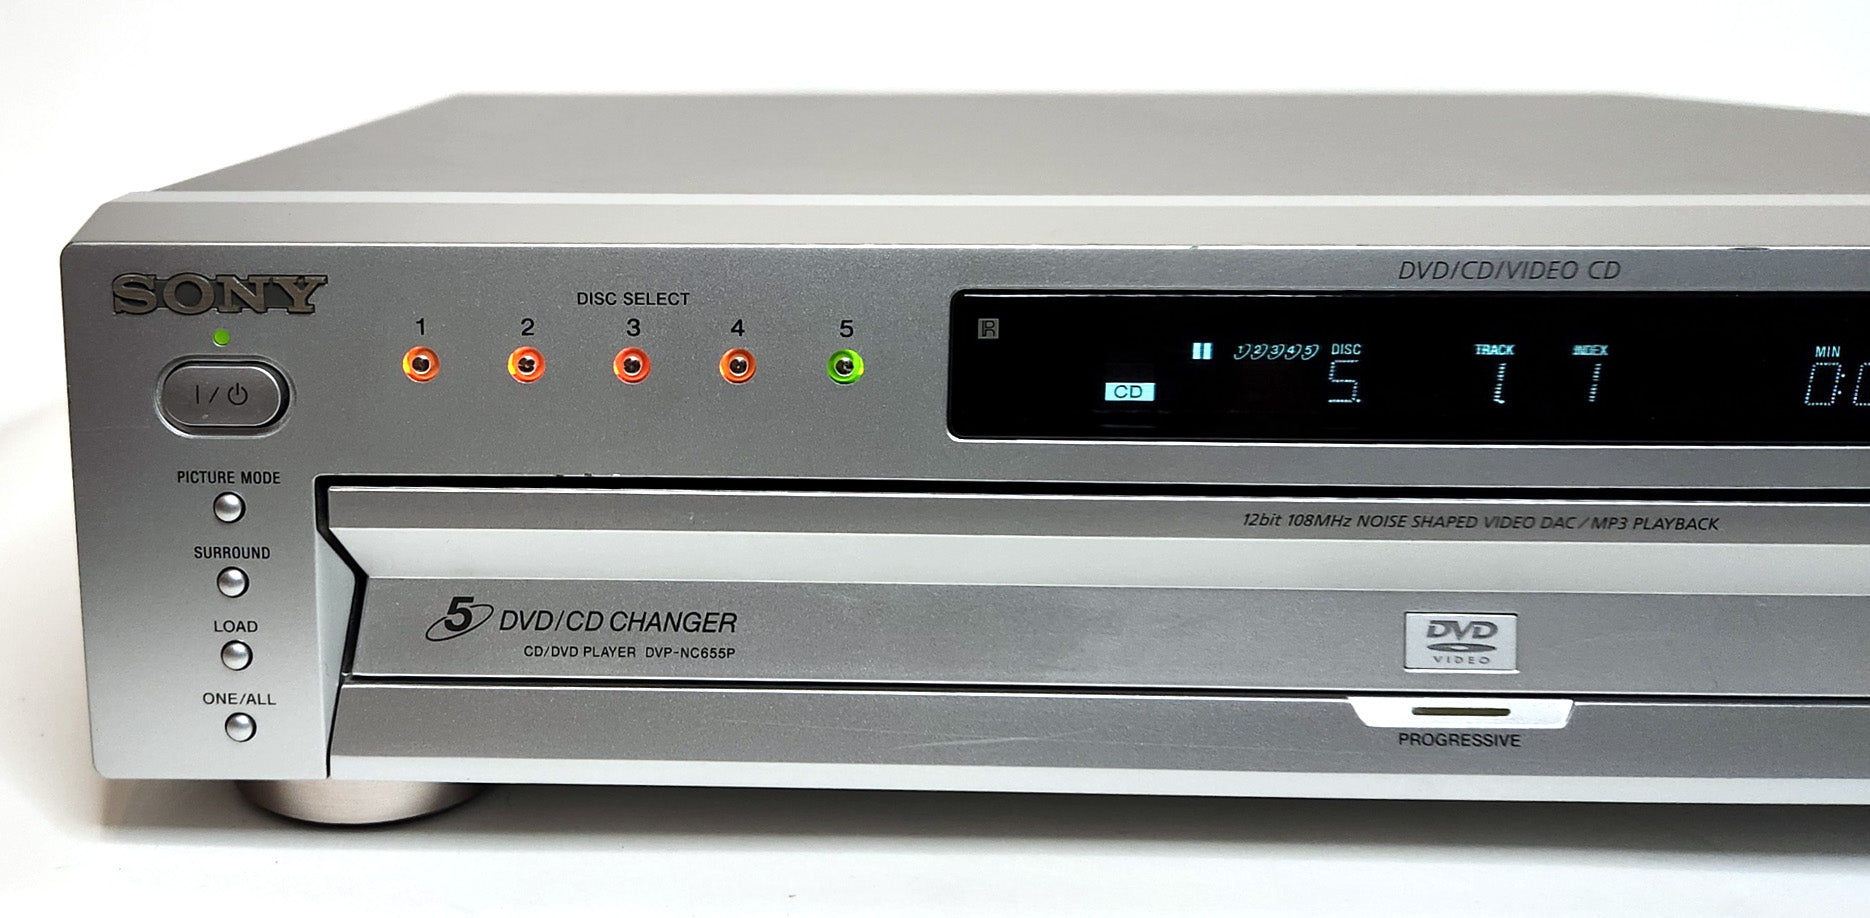 Sony DVP-NC655P/S DVD/CD Player, 5 Disc Carousel Changer - Left